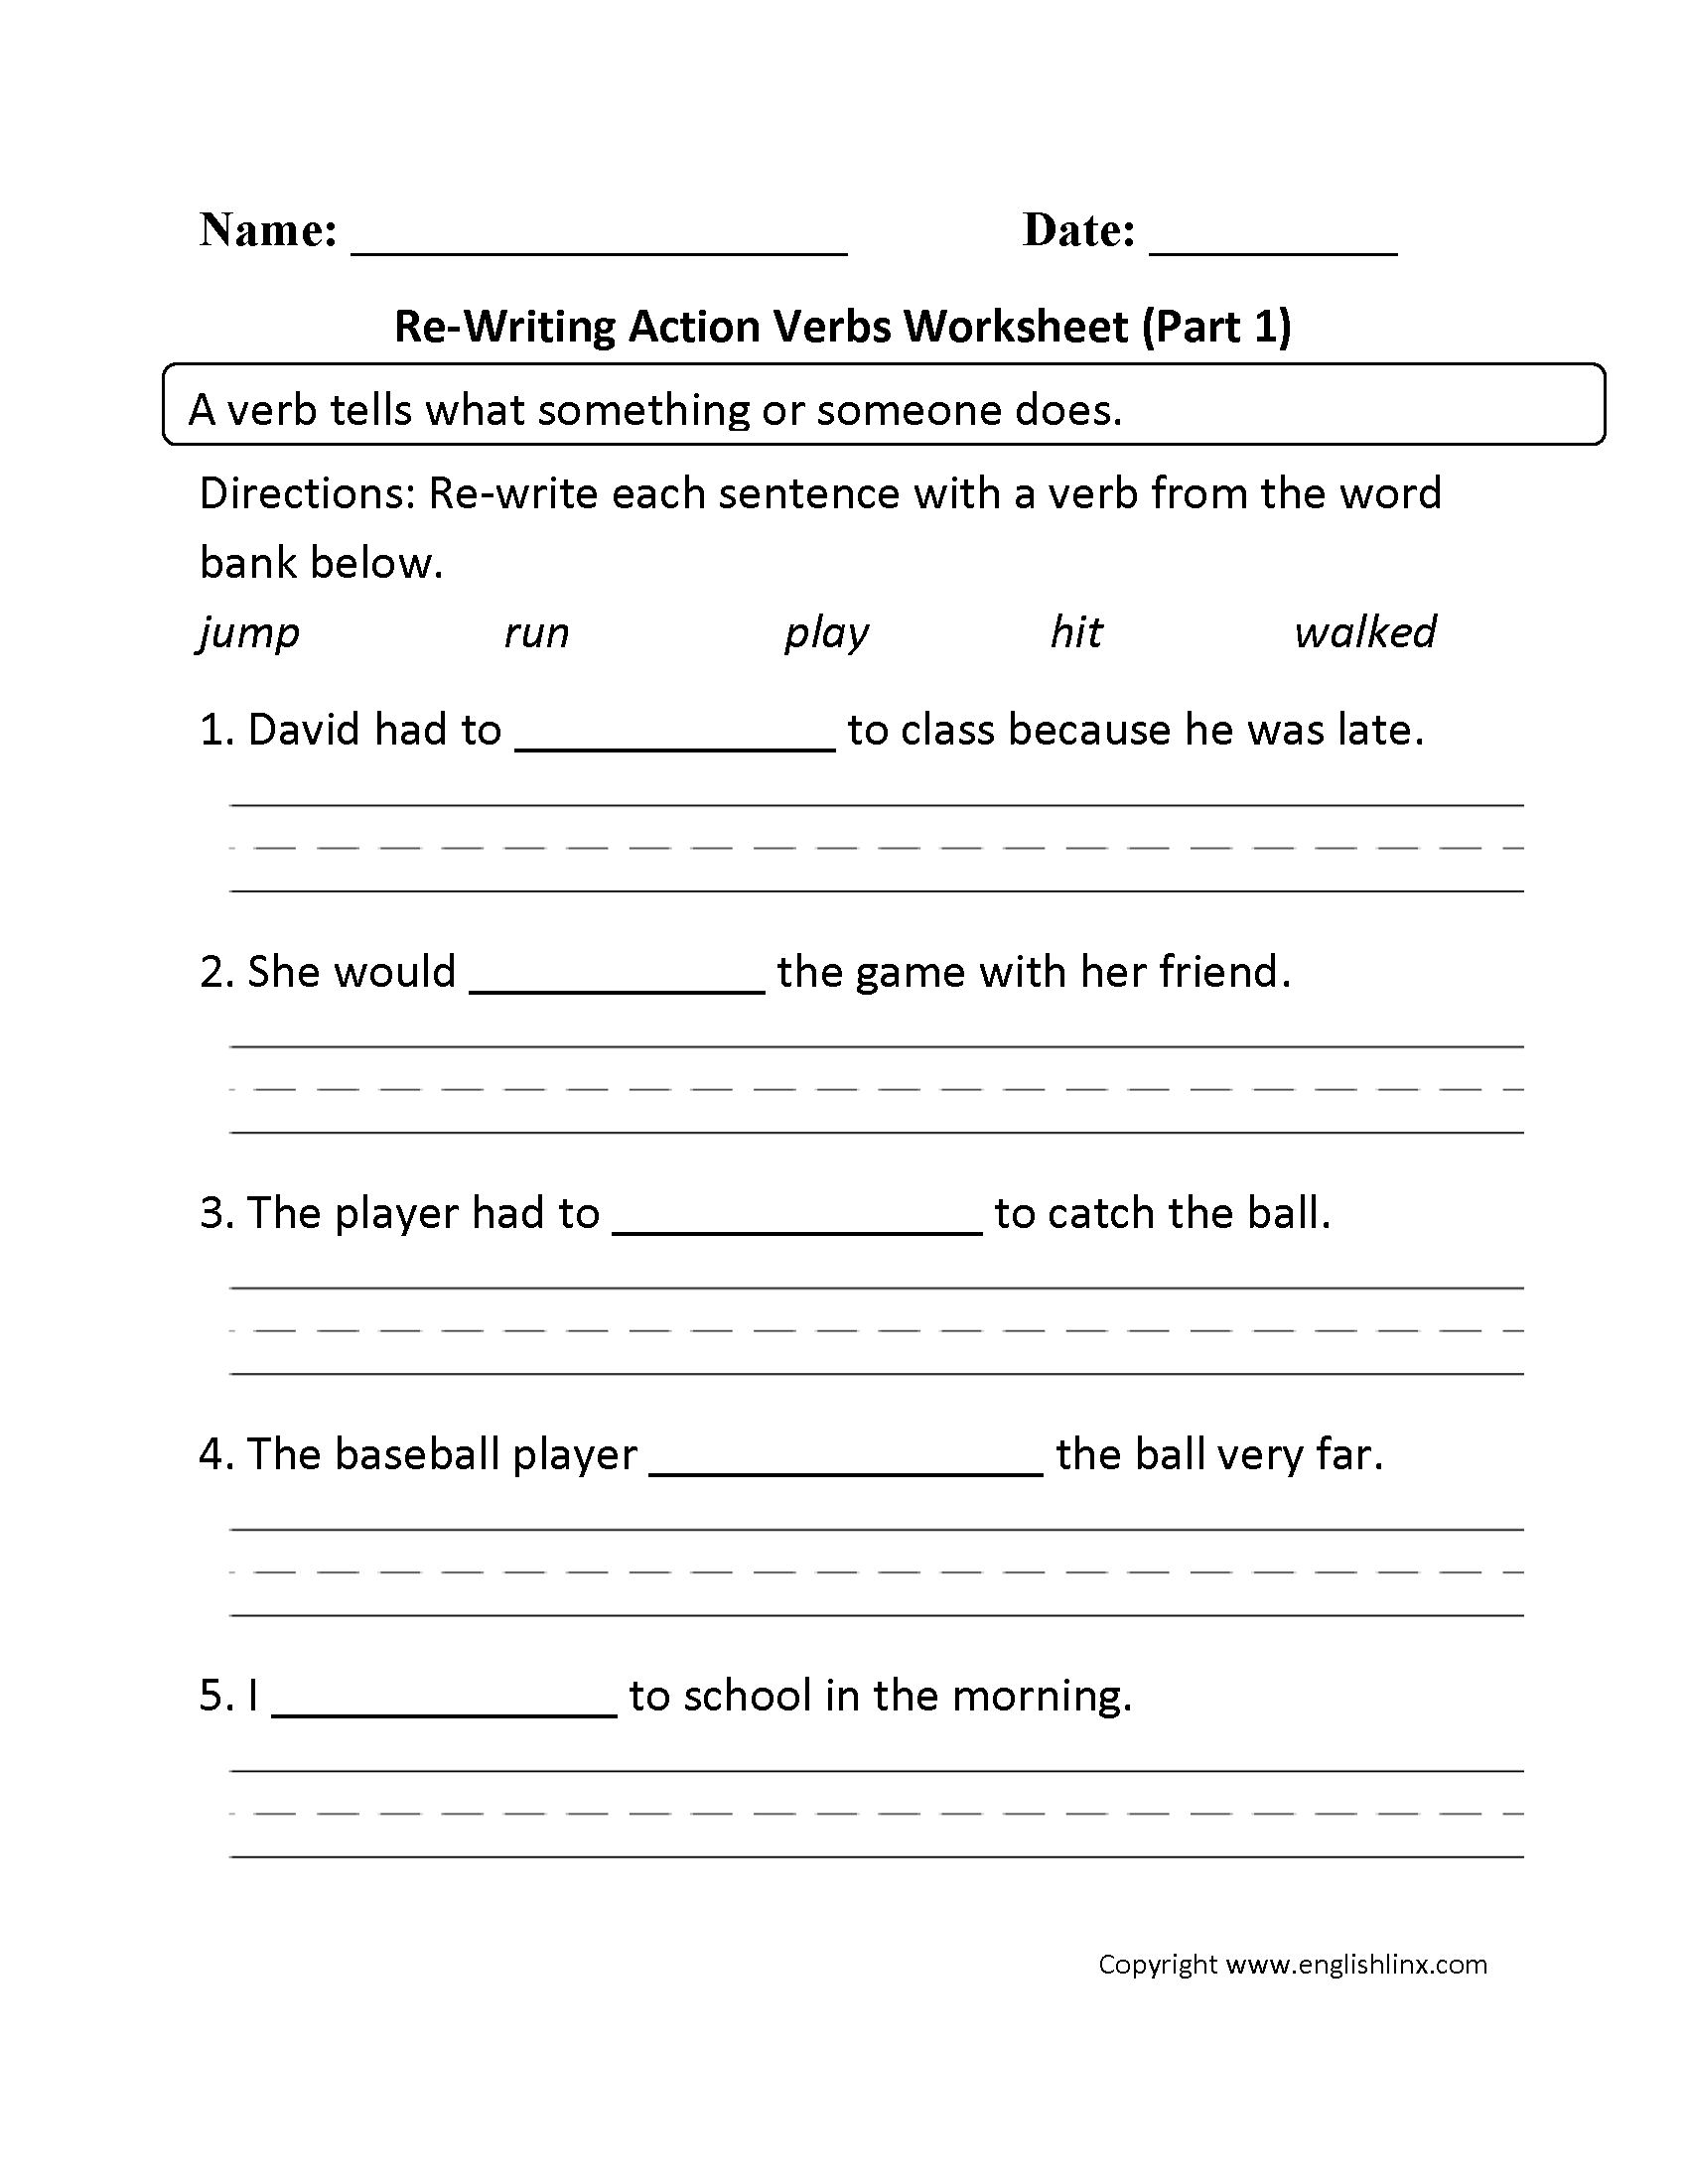 Verb To Be Worksheet Free Esl Printable Worksheets Madeteachers Free Printable Verb